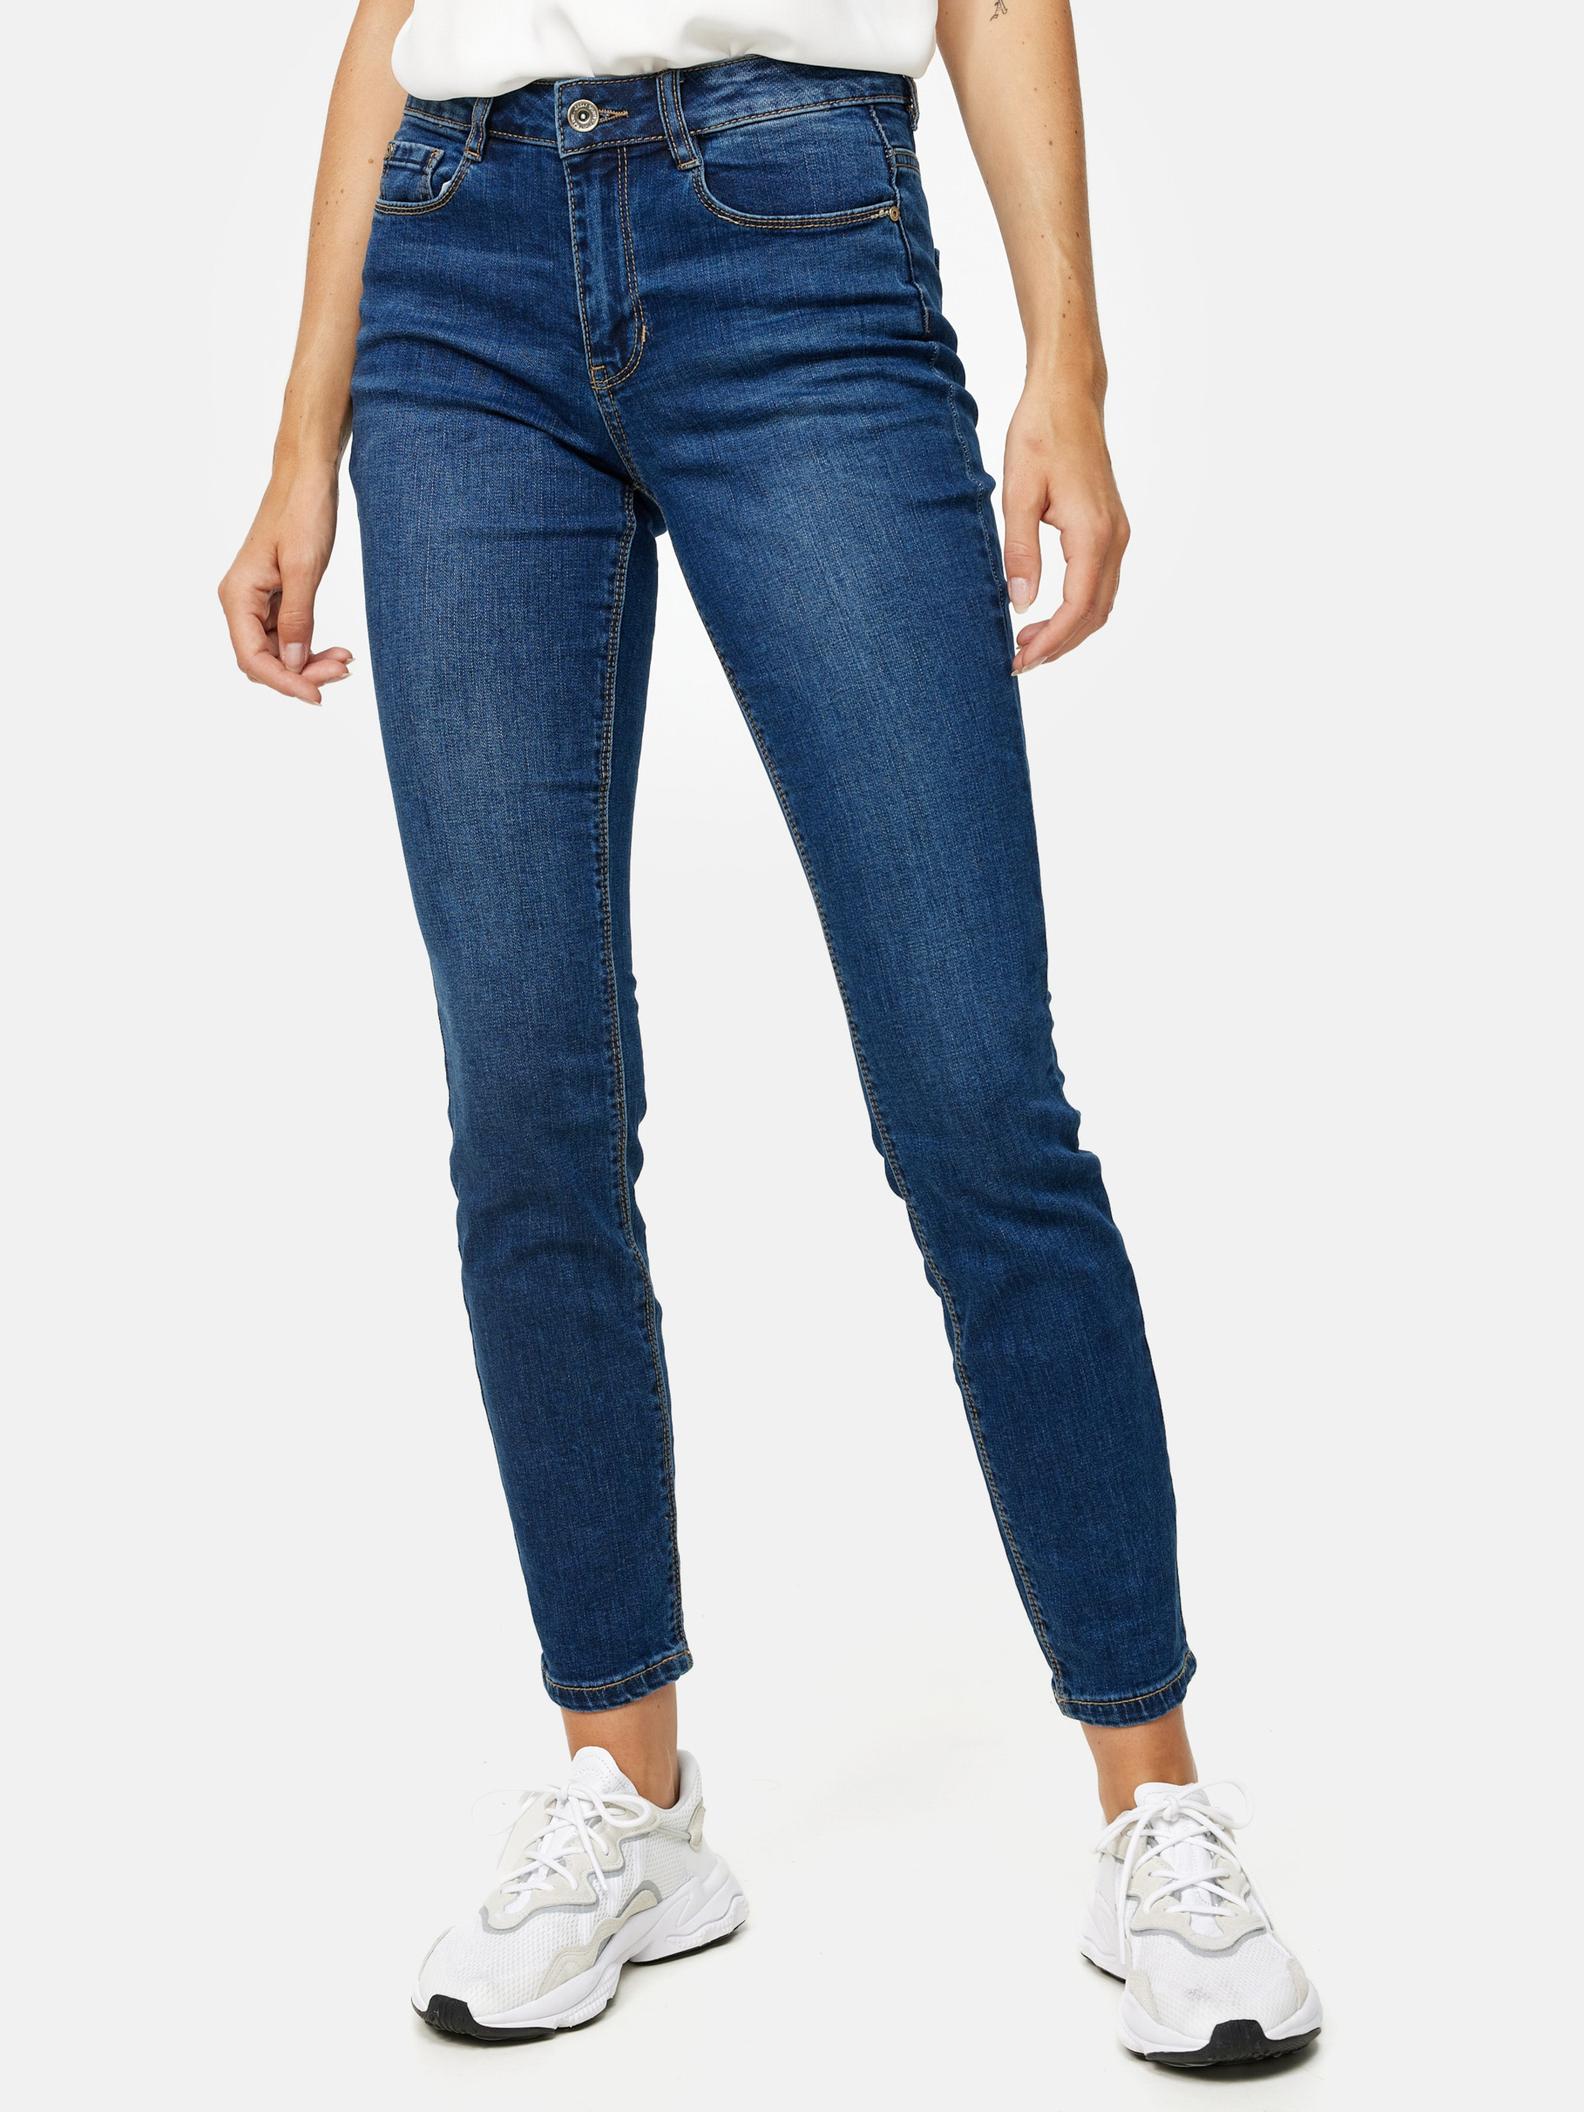 Jeans 'Emilie' für 29,99€ in Orsay